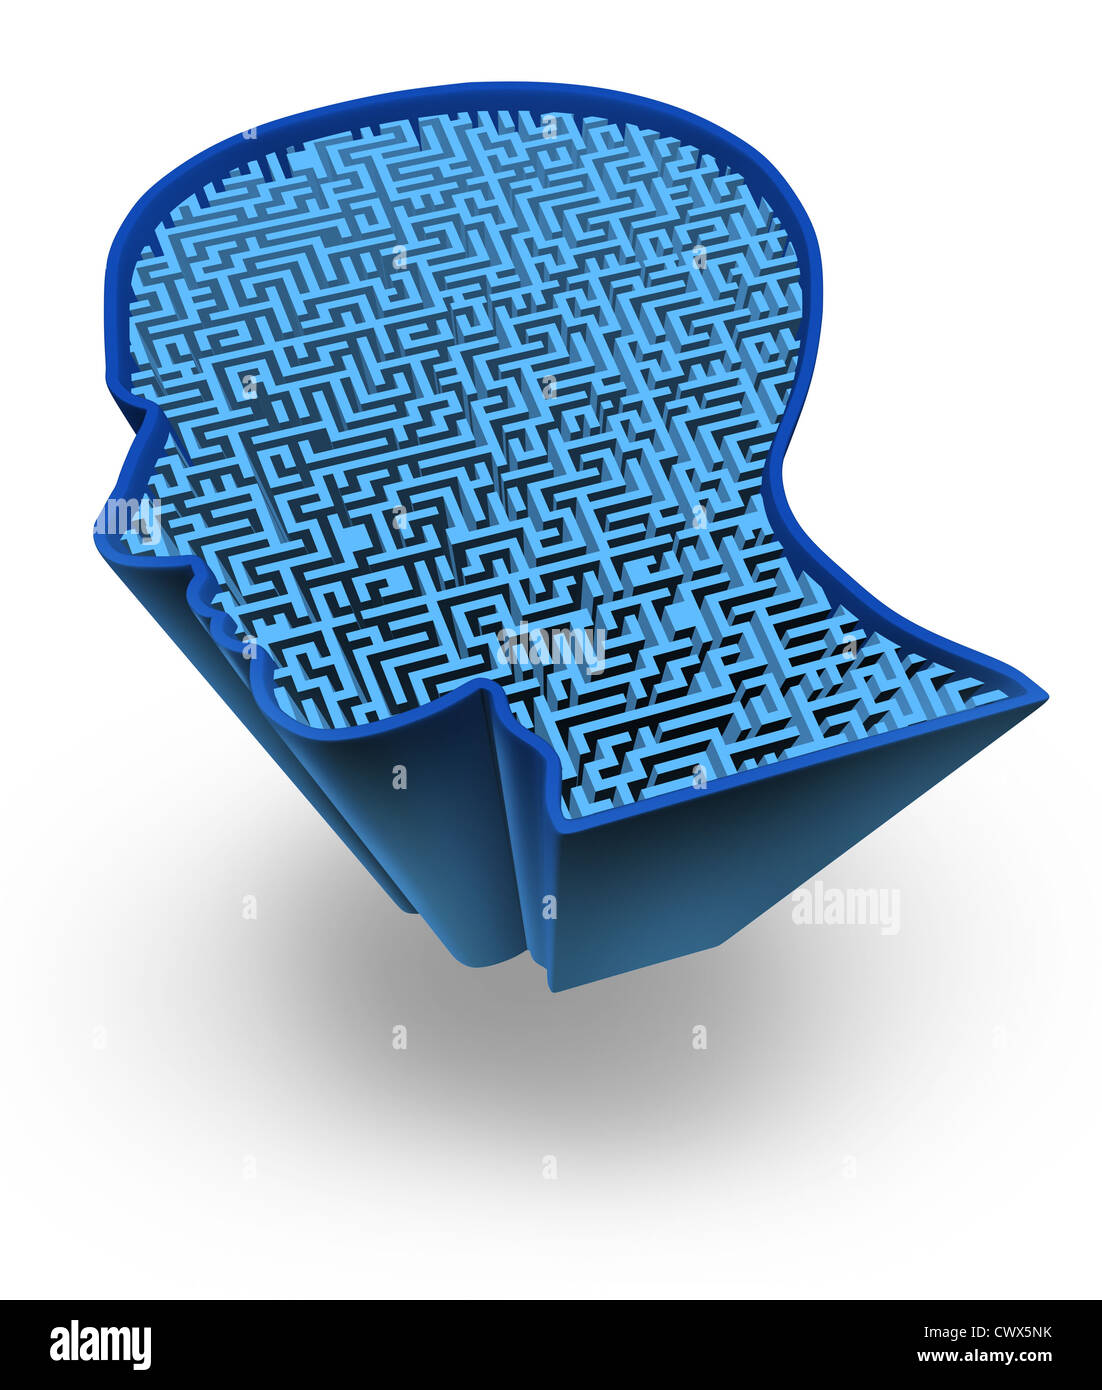 Menschliche Gehirn und Intelligenz puzzle mit einem blau leuchtenden Irrgarten und Labyrinth in Form eines menschlichen Kopfes als Symbol für die Komplexität des Gehirns denken als eine Herausforderung, von Ärzten zu lösen. Stockfoto